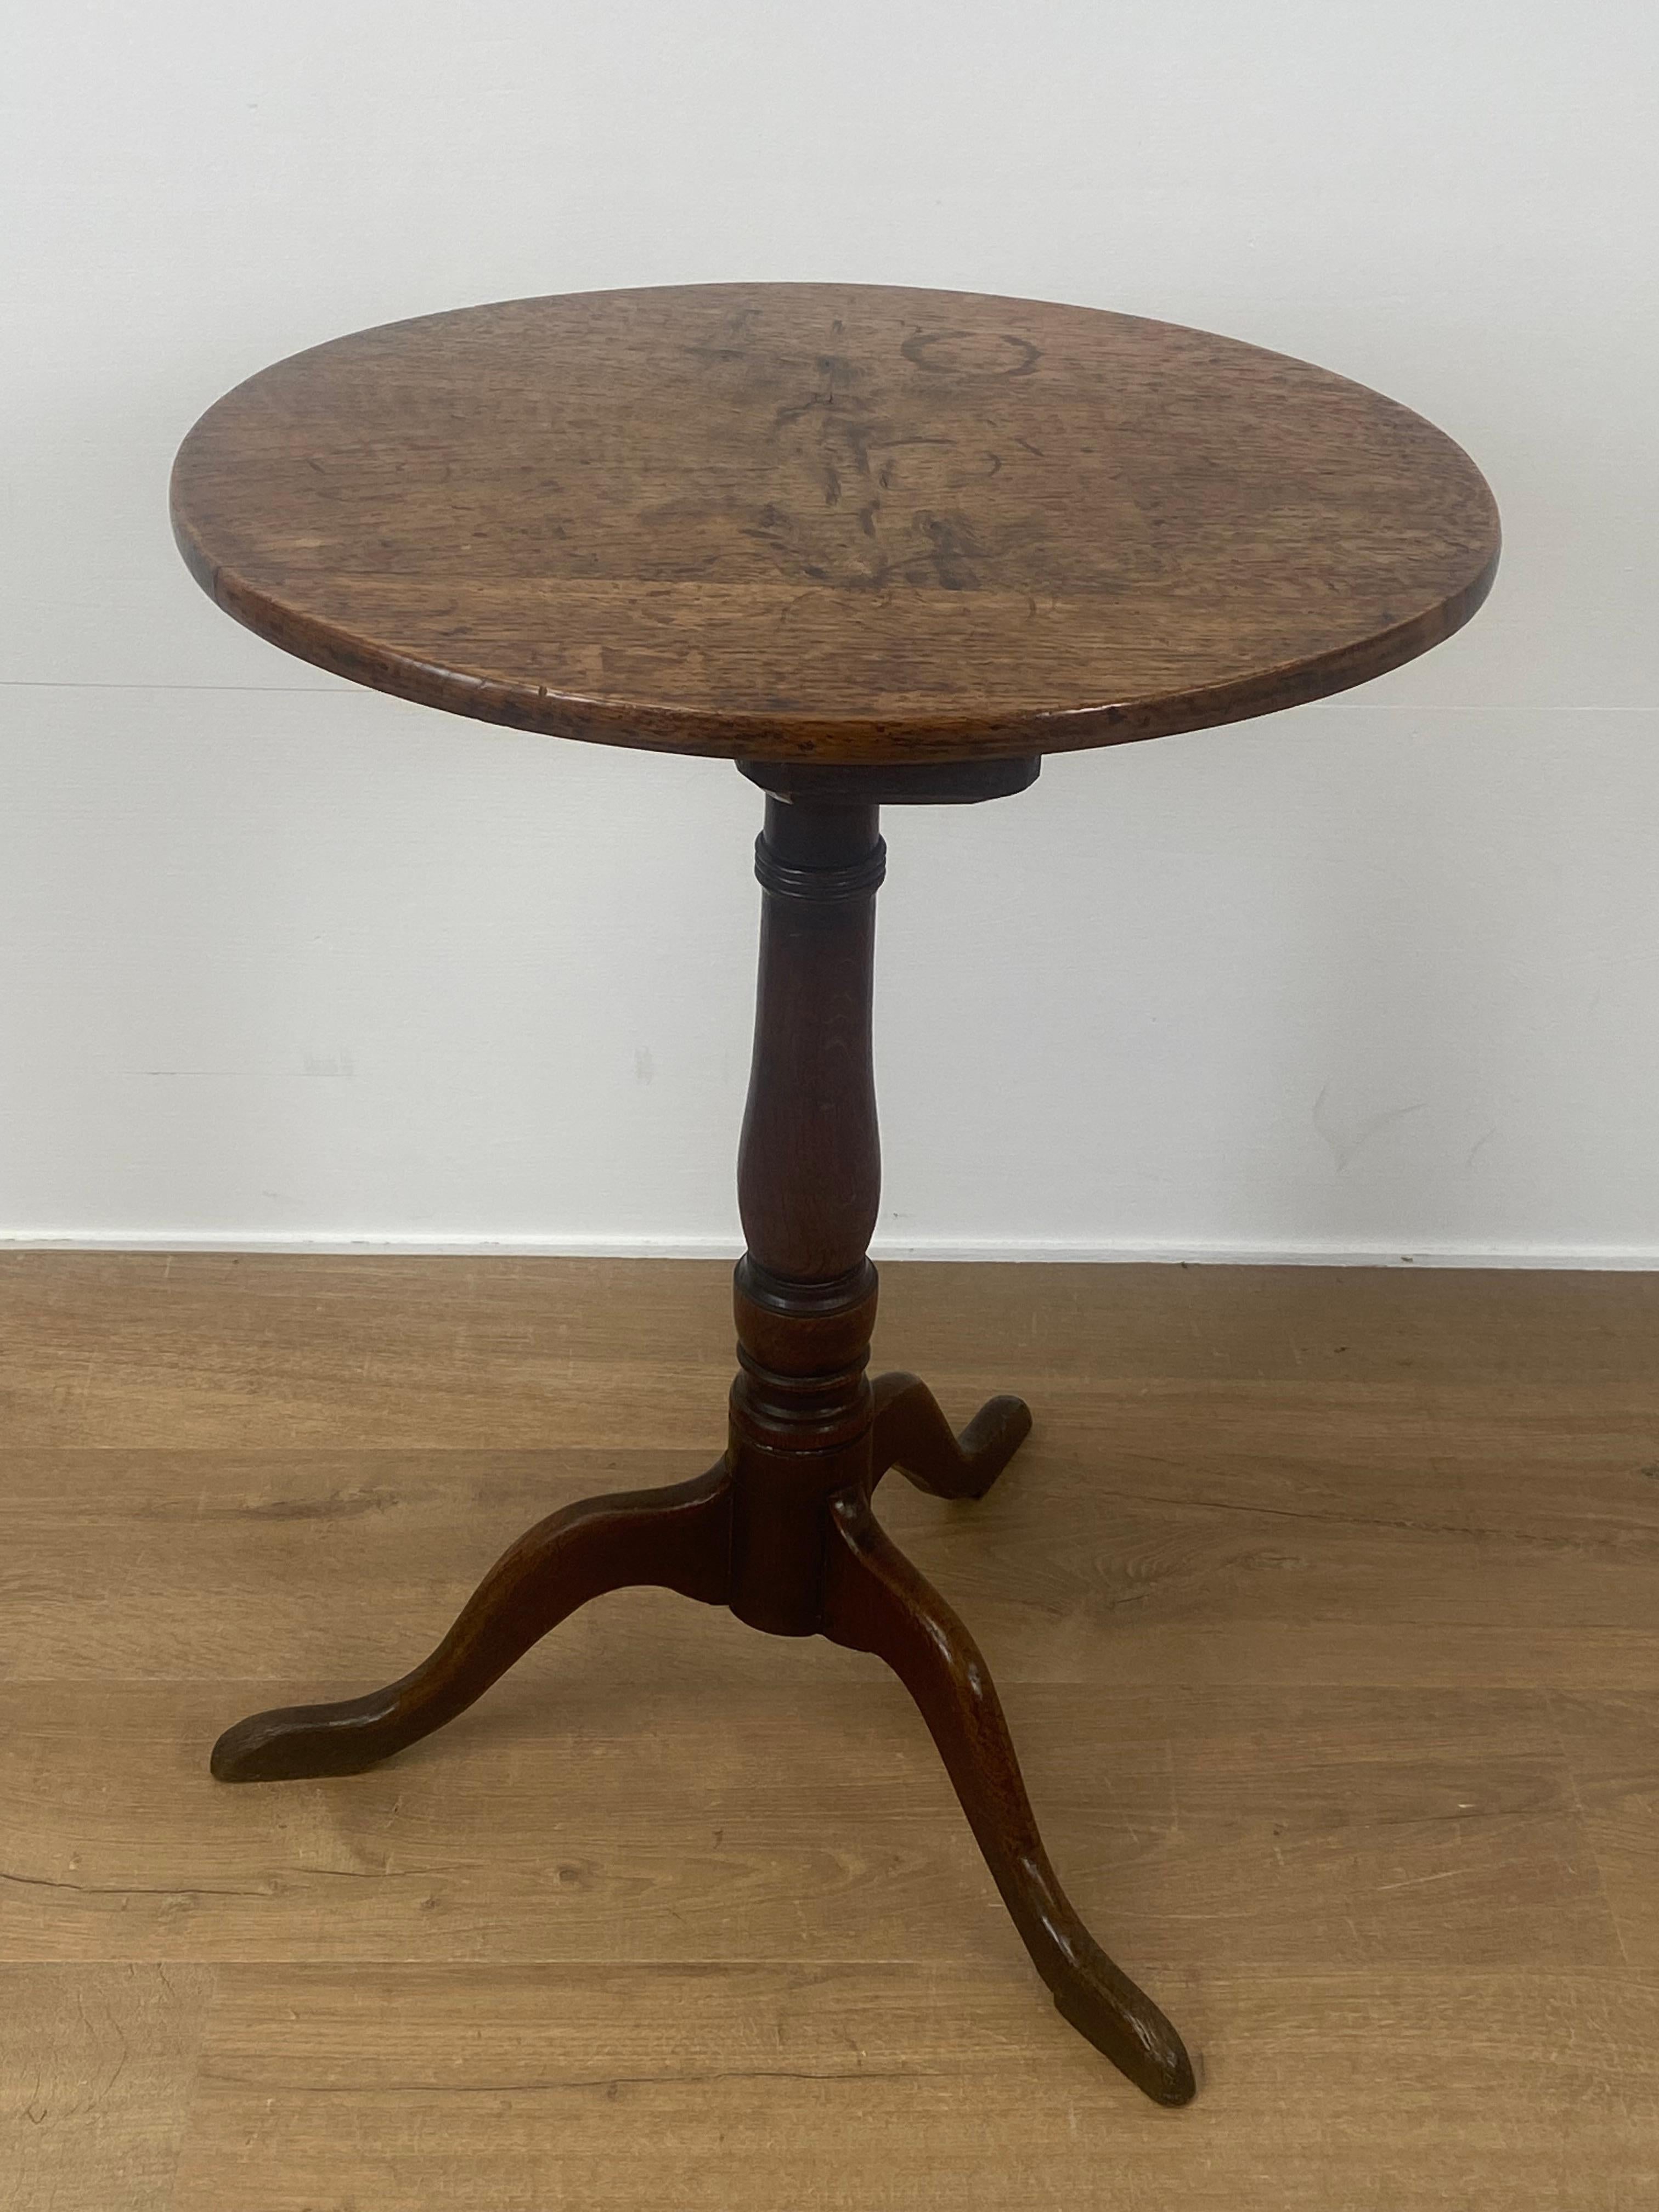 Eleganter, kleiner englischer Tripod-Tisch aus blonder Eiche,
spätes 18. Jahrhundert, gute alte Patina und Abnutzung des Eichenholzes,
für verschiedene Zwecke zu verwenden